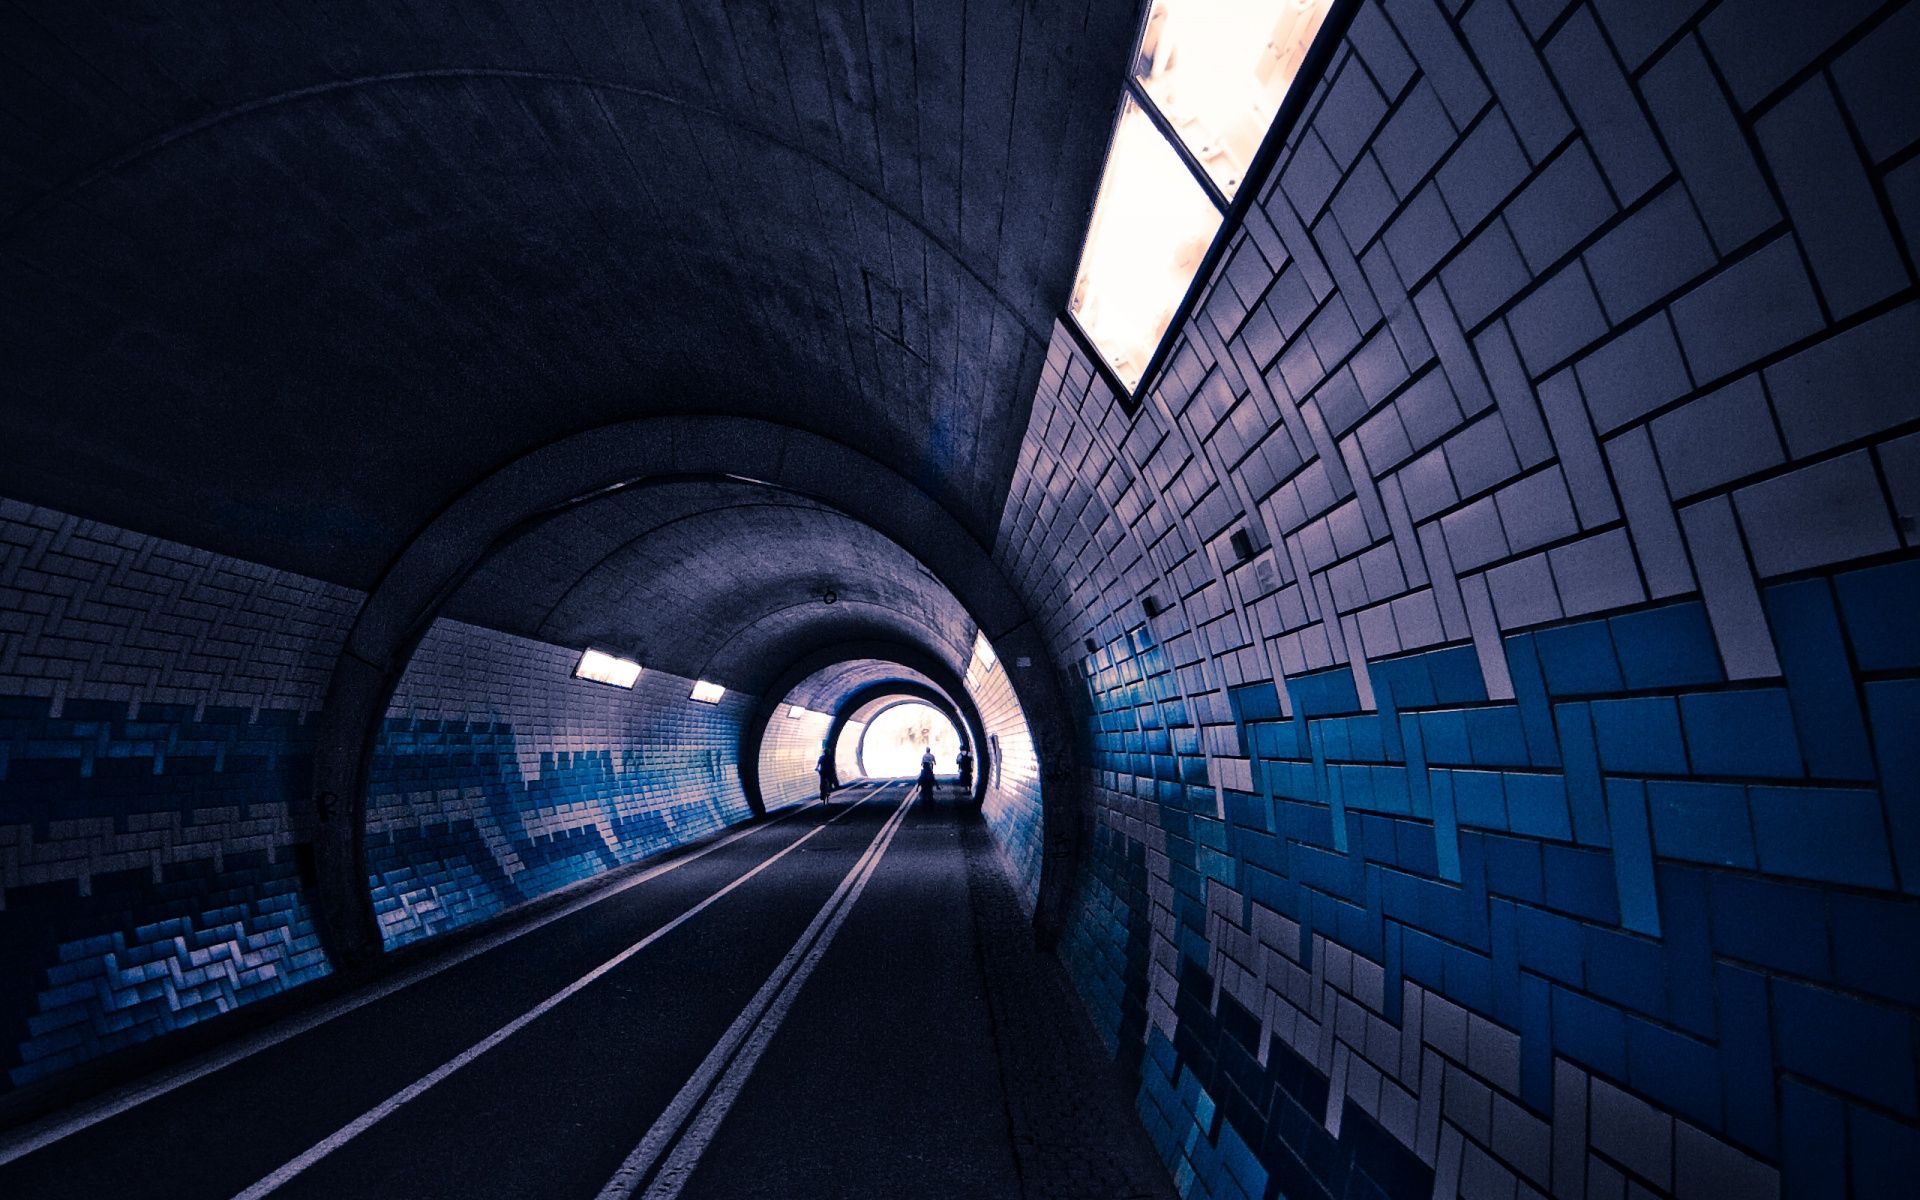 عکس جالب تونل با پنجره های کوچک با دیوار آبی و سفید